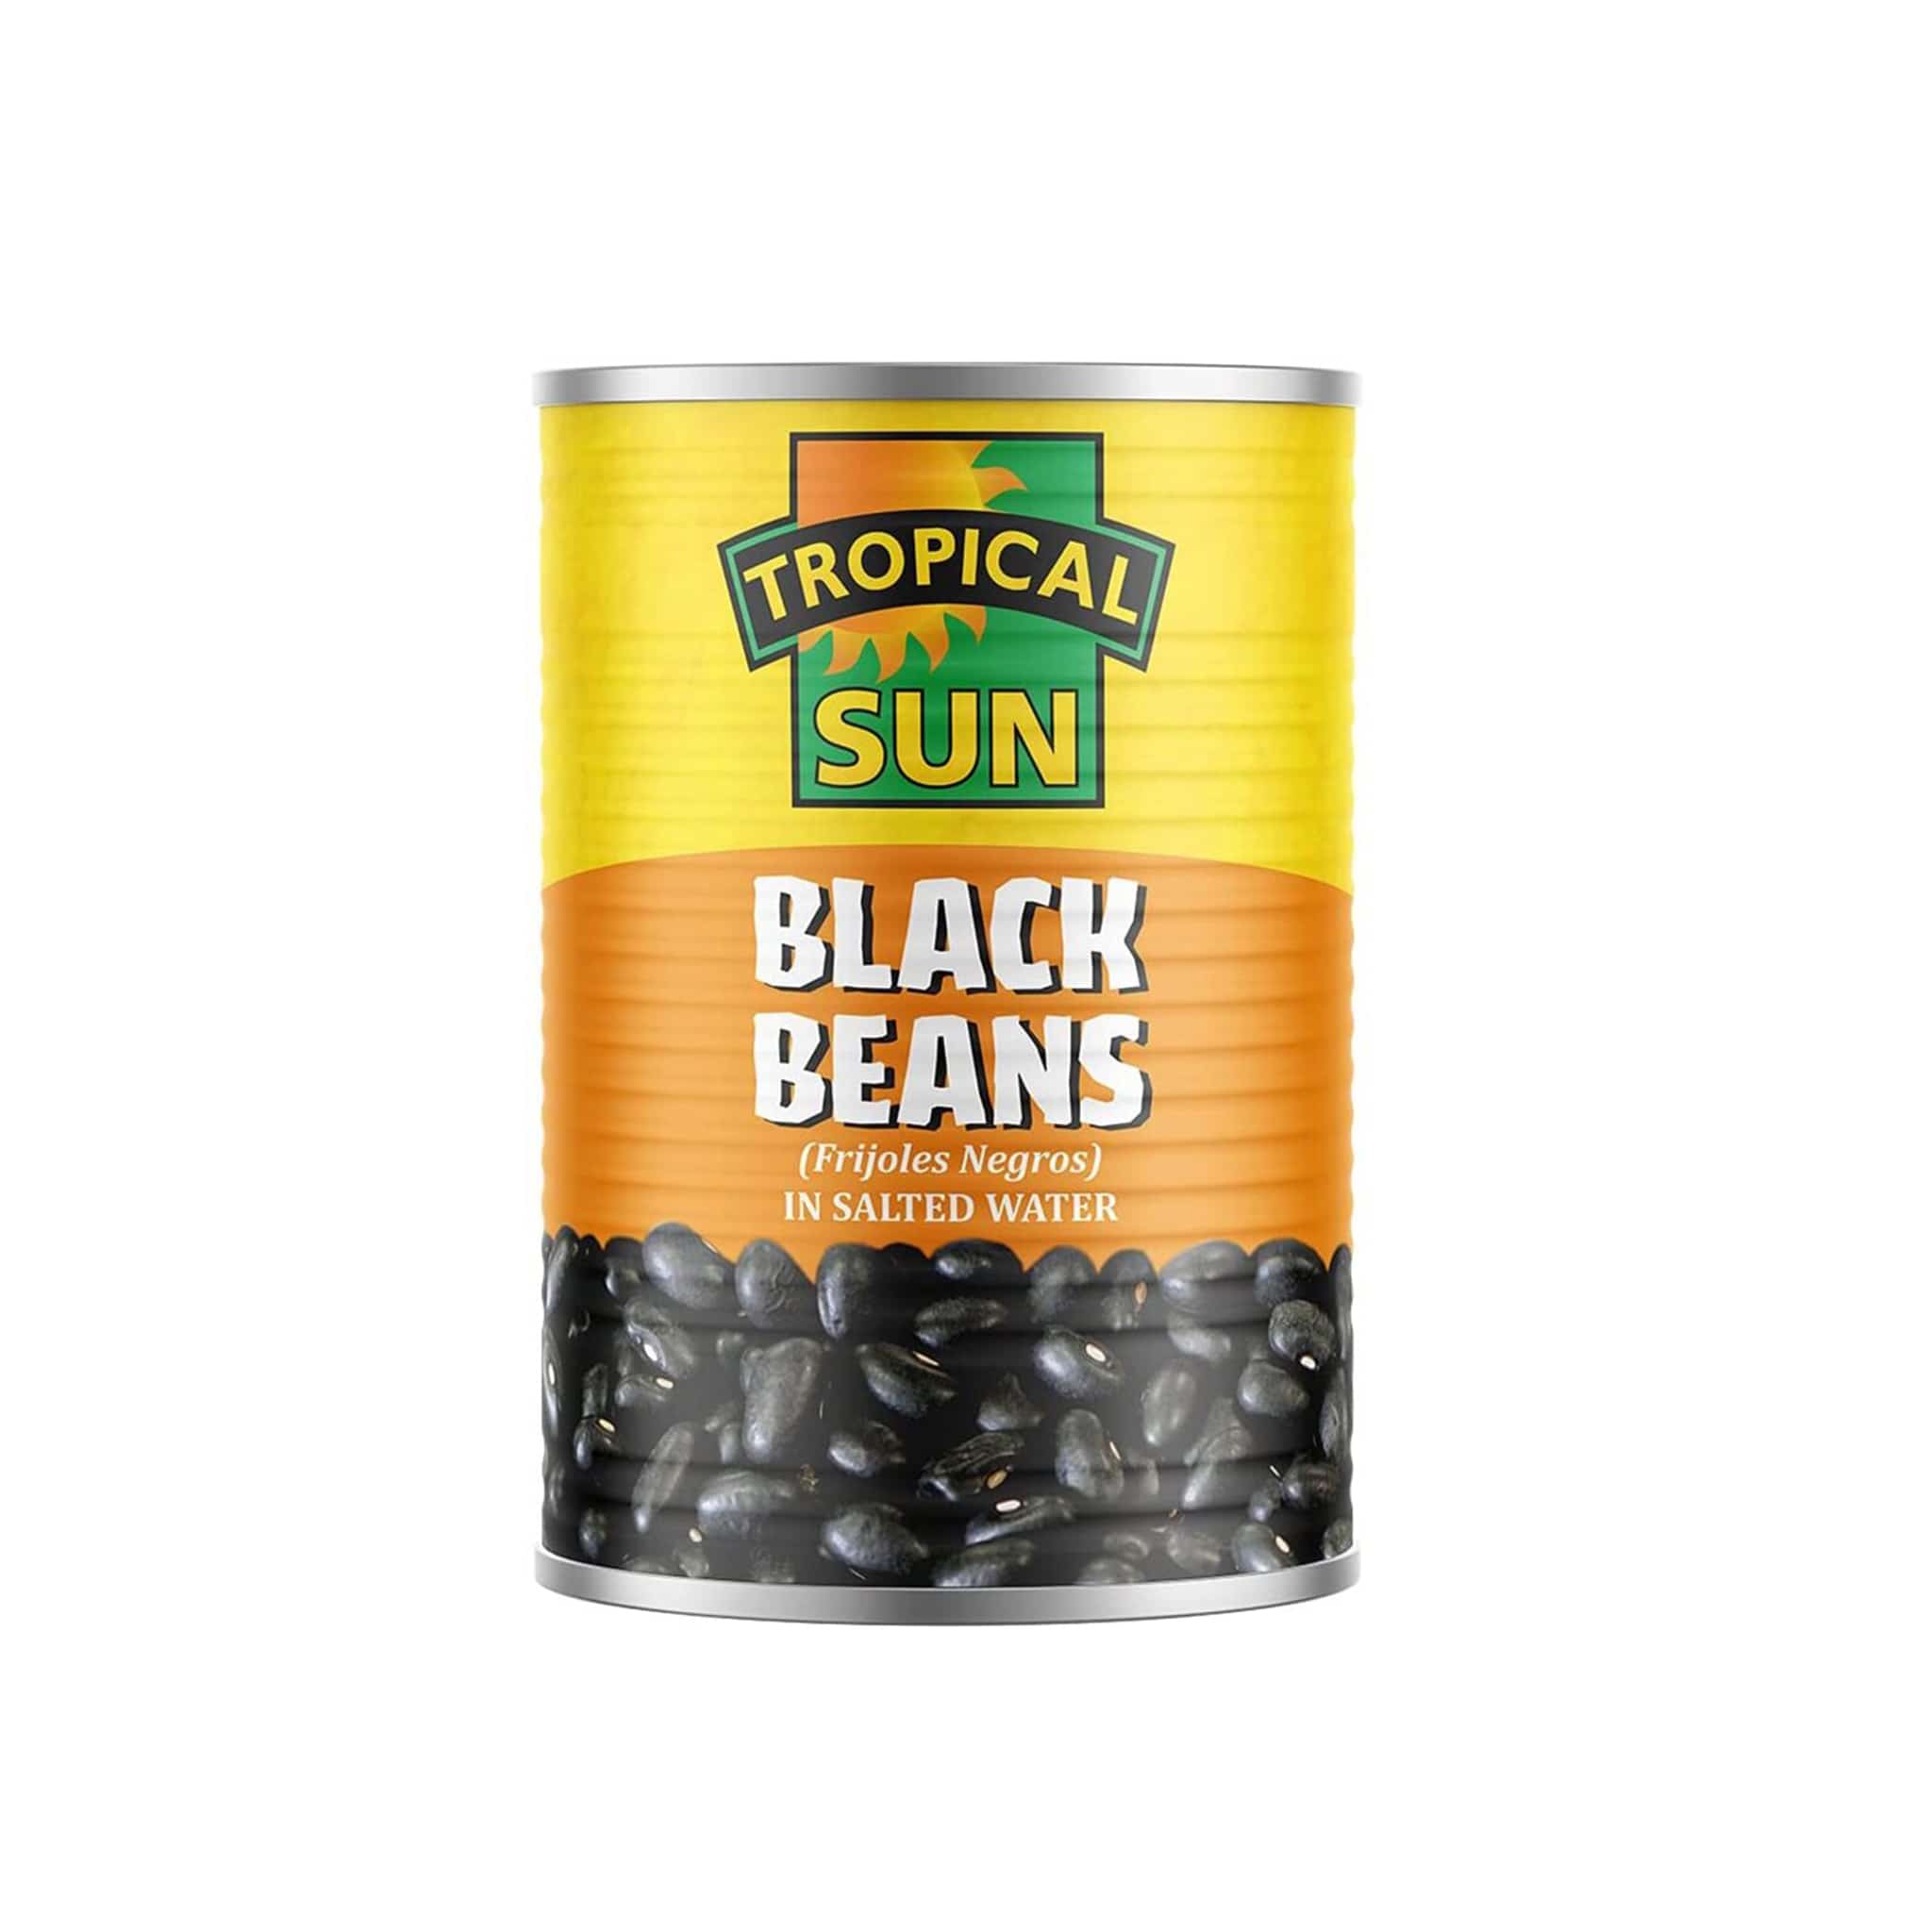 Tropical Sun Black Beans, 400g